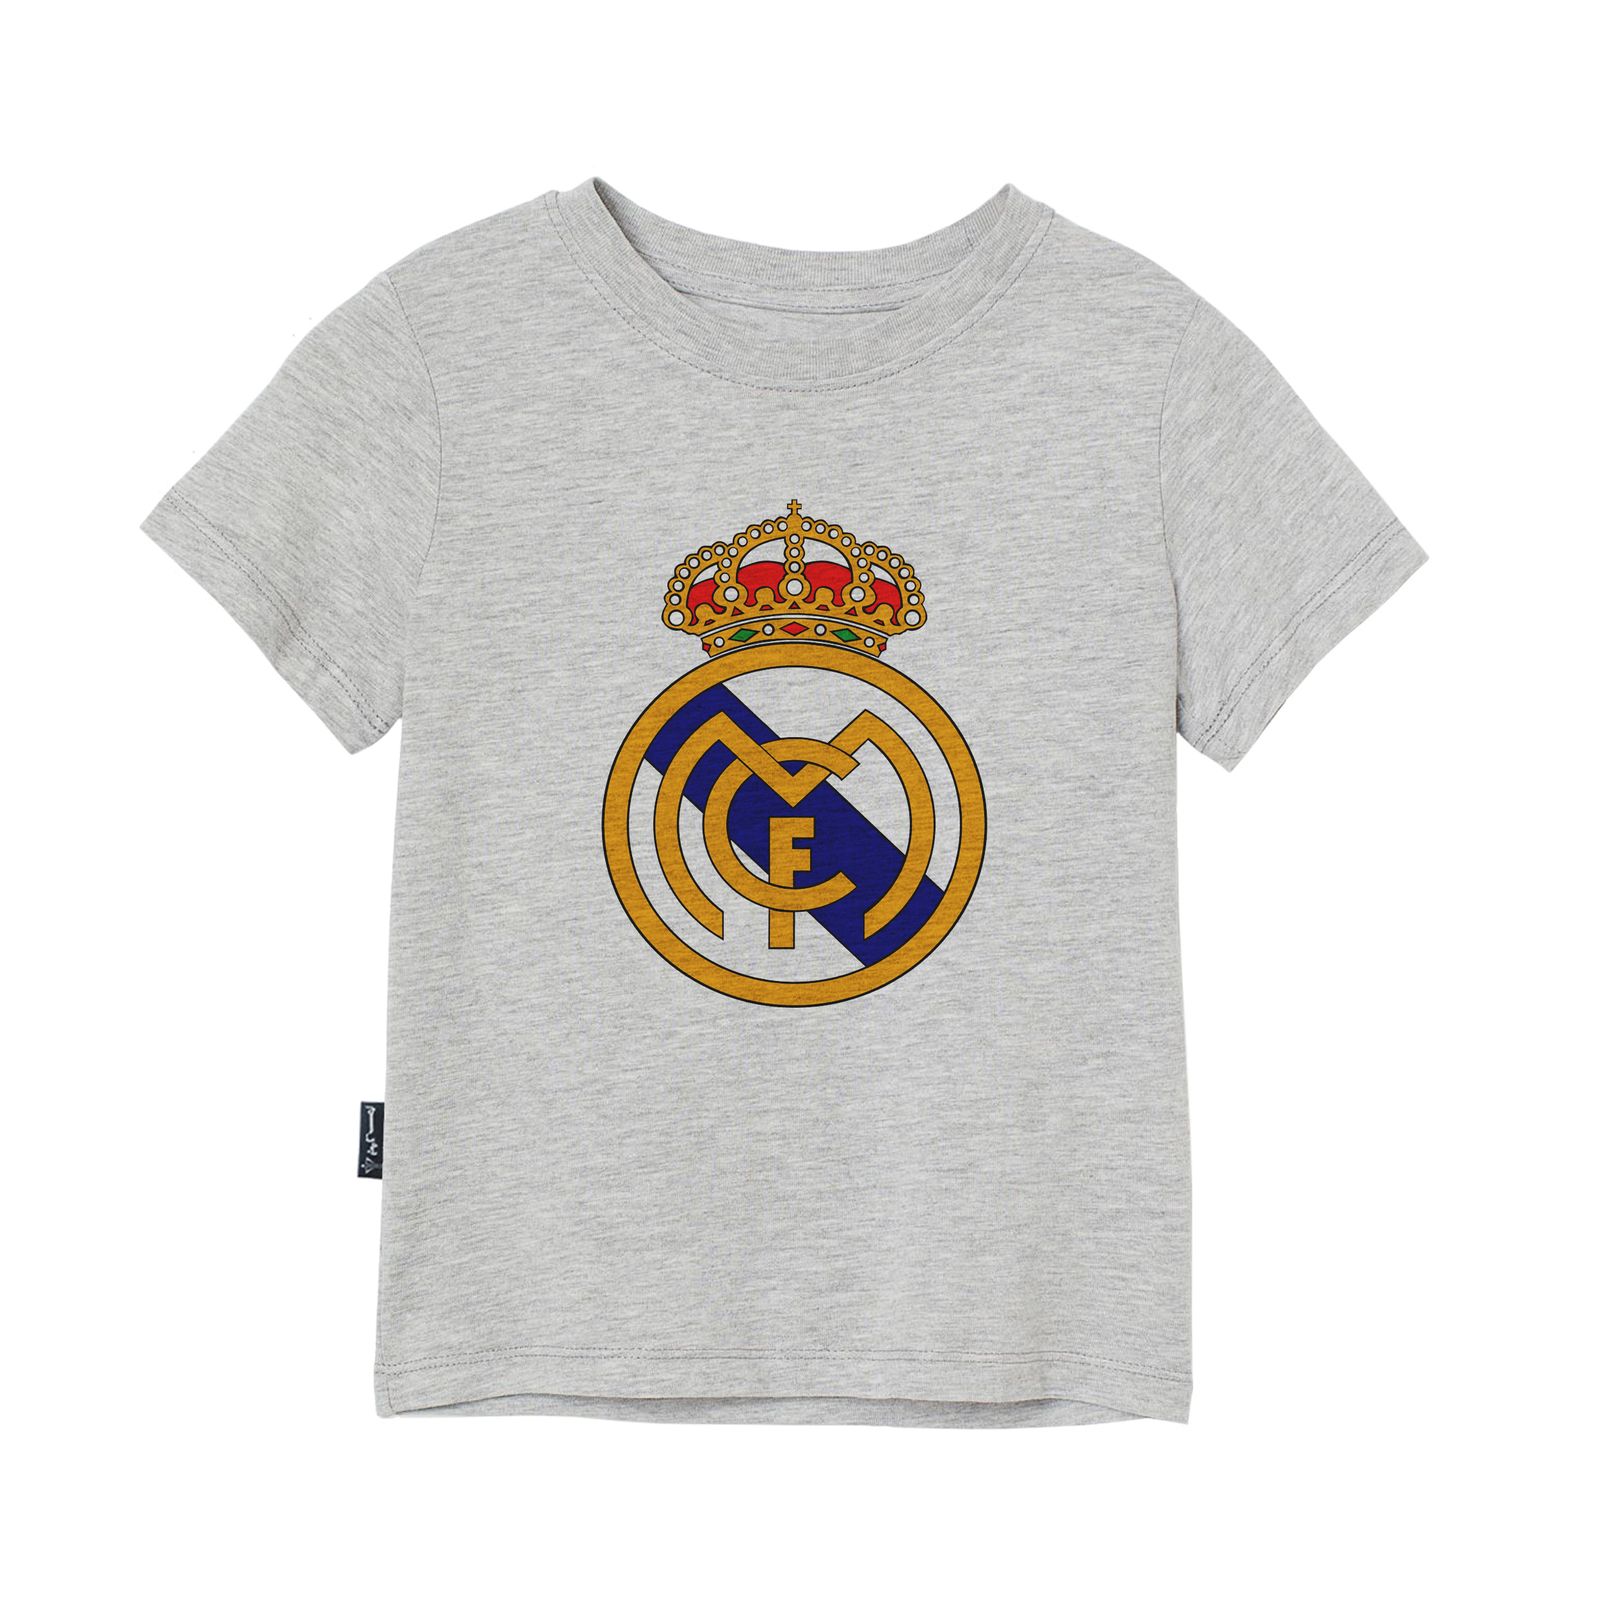 تی شرت آستین کوتاه دخترانه به رسم مدل رئال مادرید کد 110019 -  - 3